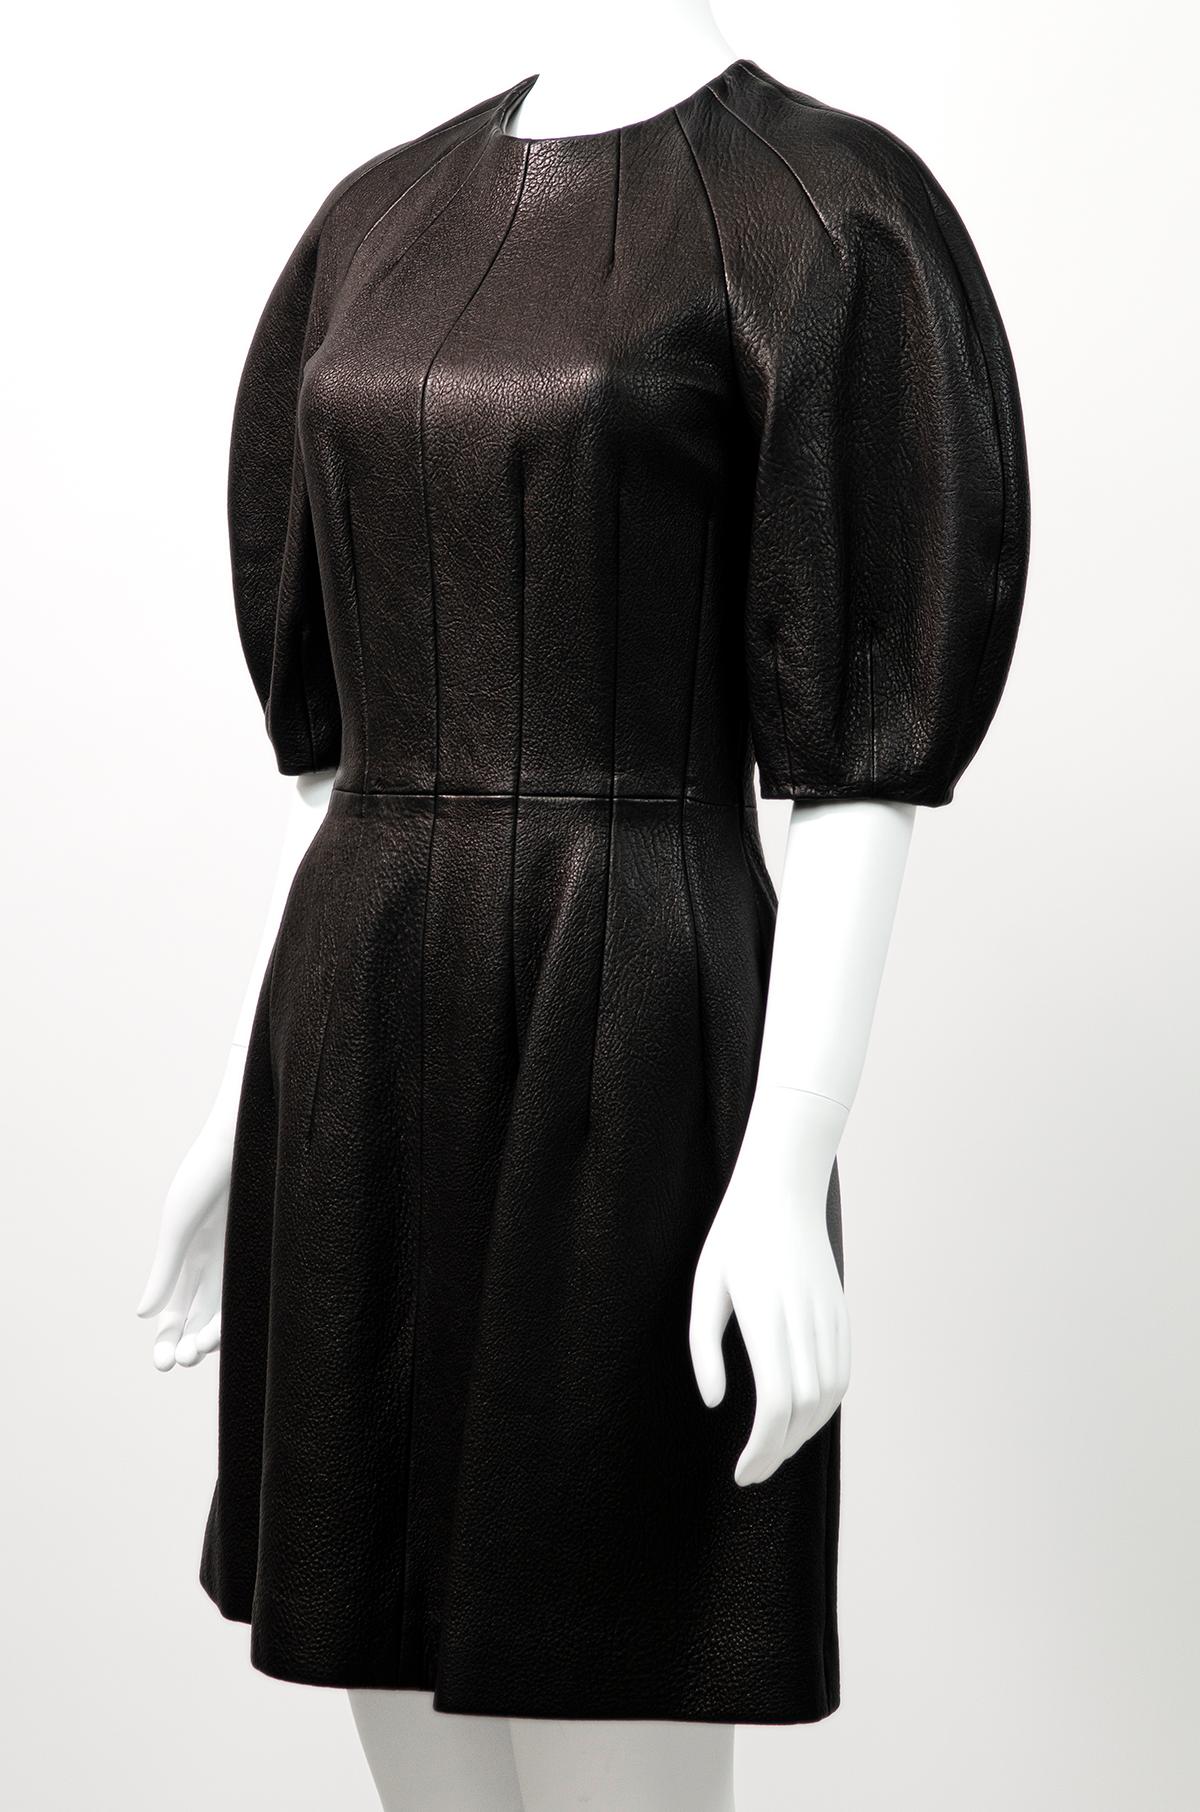 Unglaubliches Kleid aus strukturiertem Leder von Alexander McQueen mit der unglaublichsten dramatischen Silhouette.

Dieses hochwertige Kleid hat die unglaublichste runde Silhouette - es ist aus strukturiertem Leder gefertigt und verfügt über einen